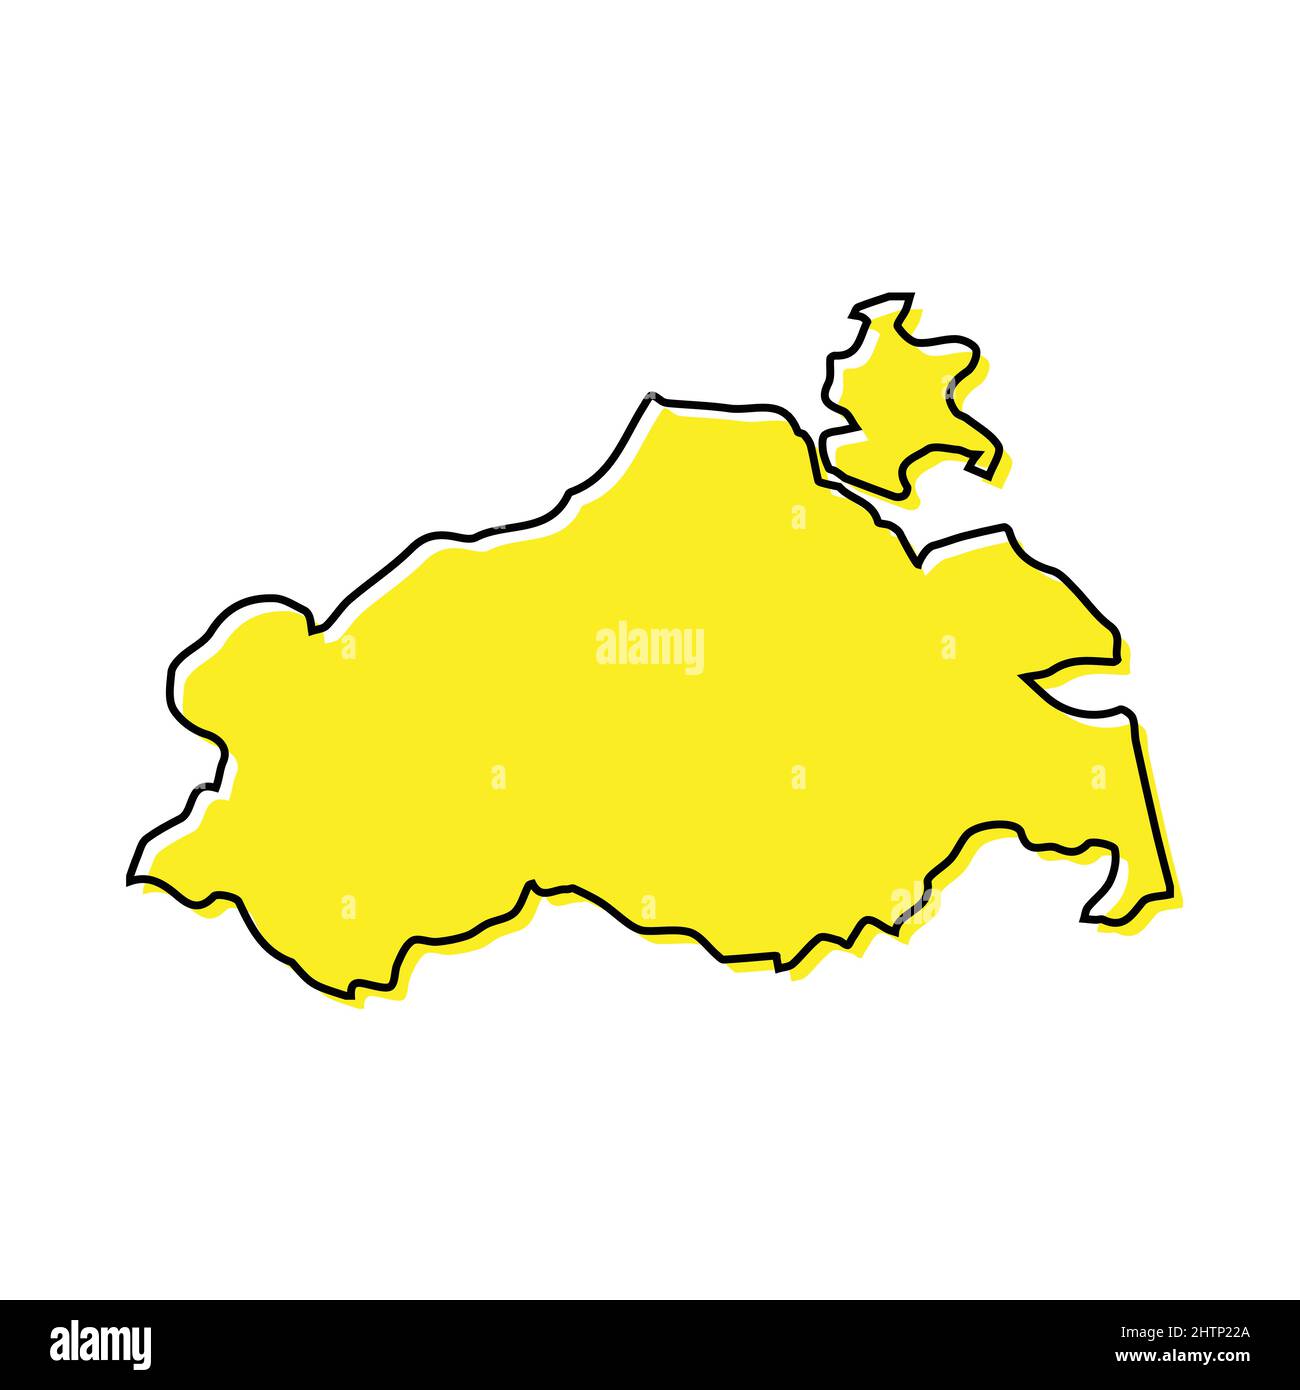 Einfache Übersichtskarte von Mecklenburg-Vorpommern ist ein Bundesland von Deutschland. Stilisiertes, minimalistisches Liniendesign Stock Vektor